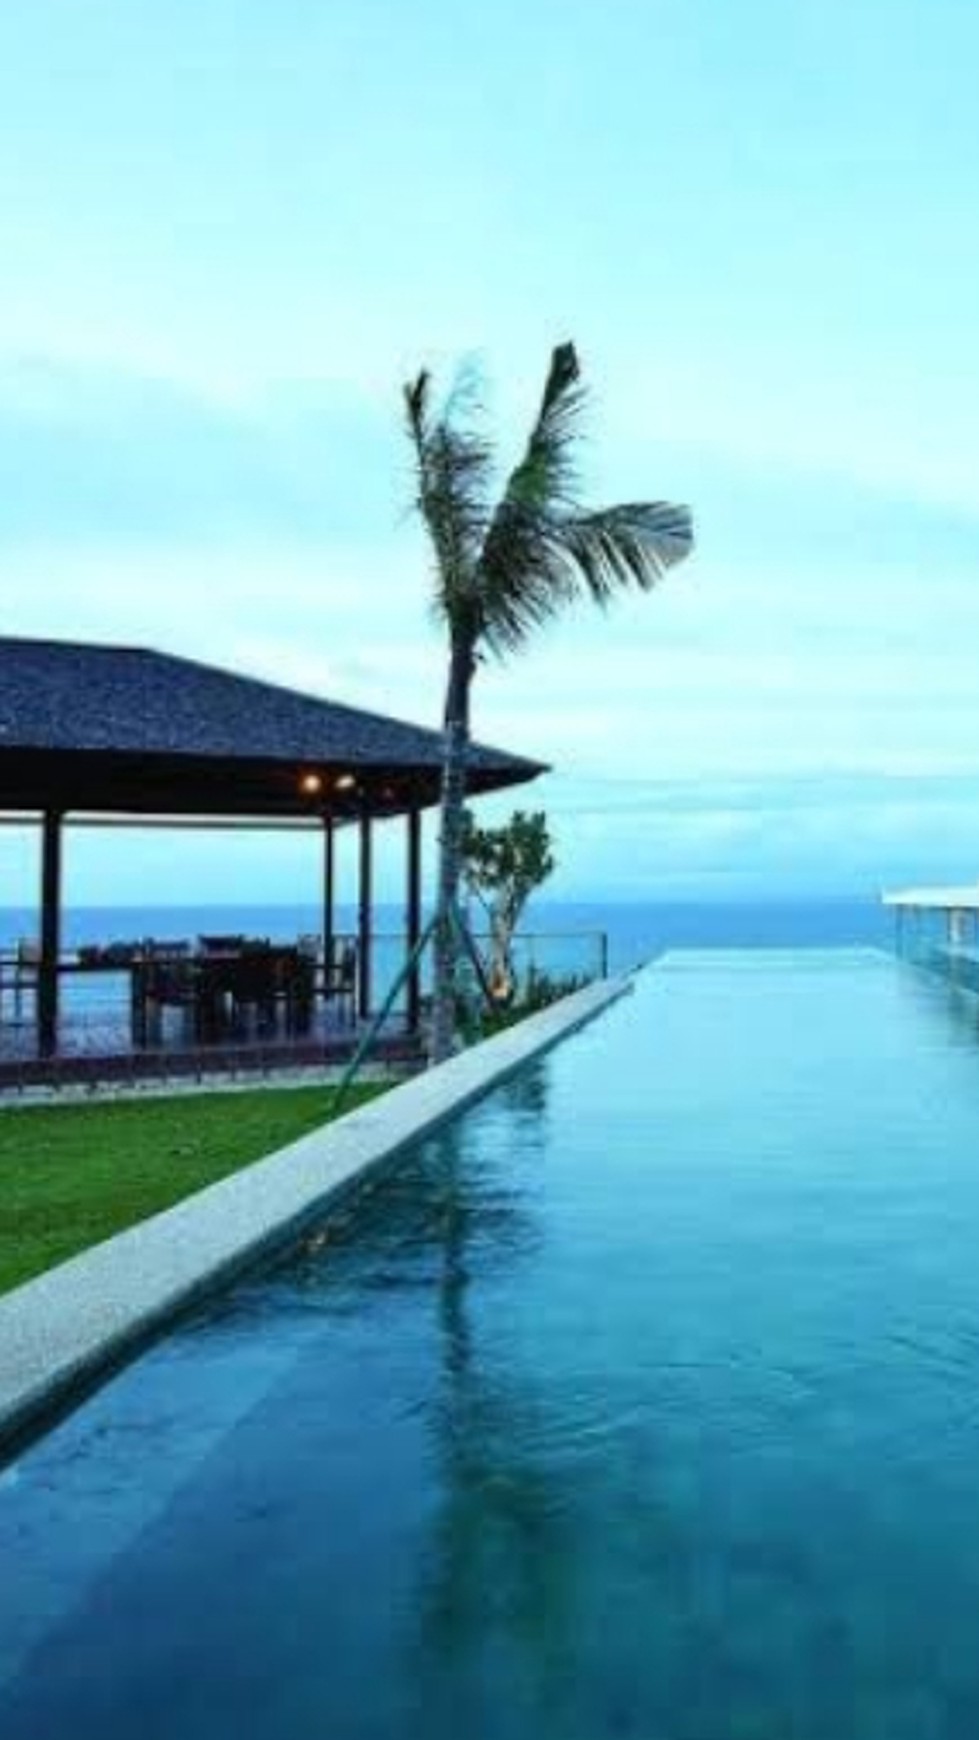 Villa di Pantai Dreamland, Pecatu, Bali